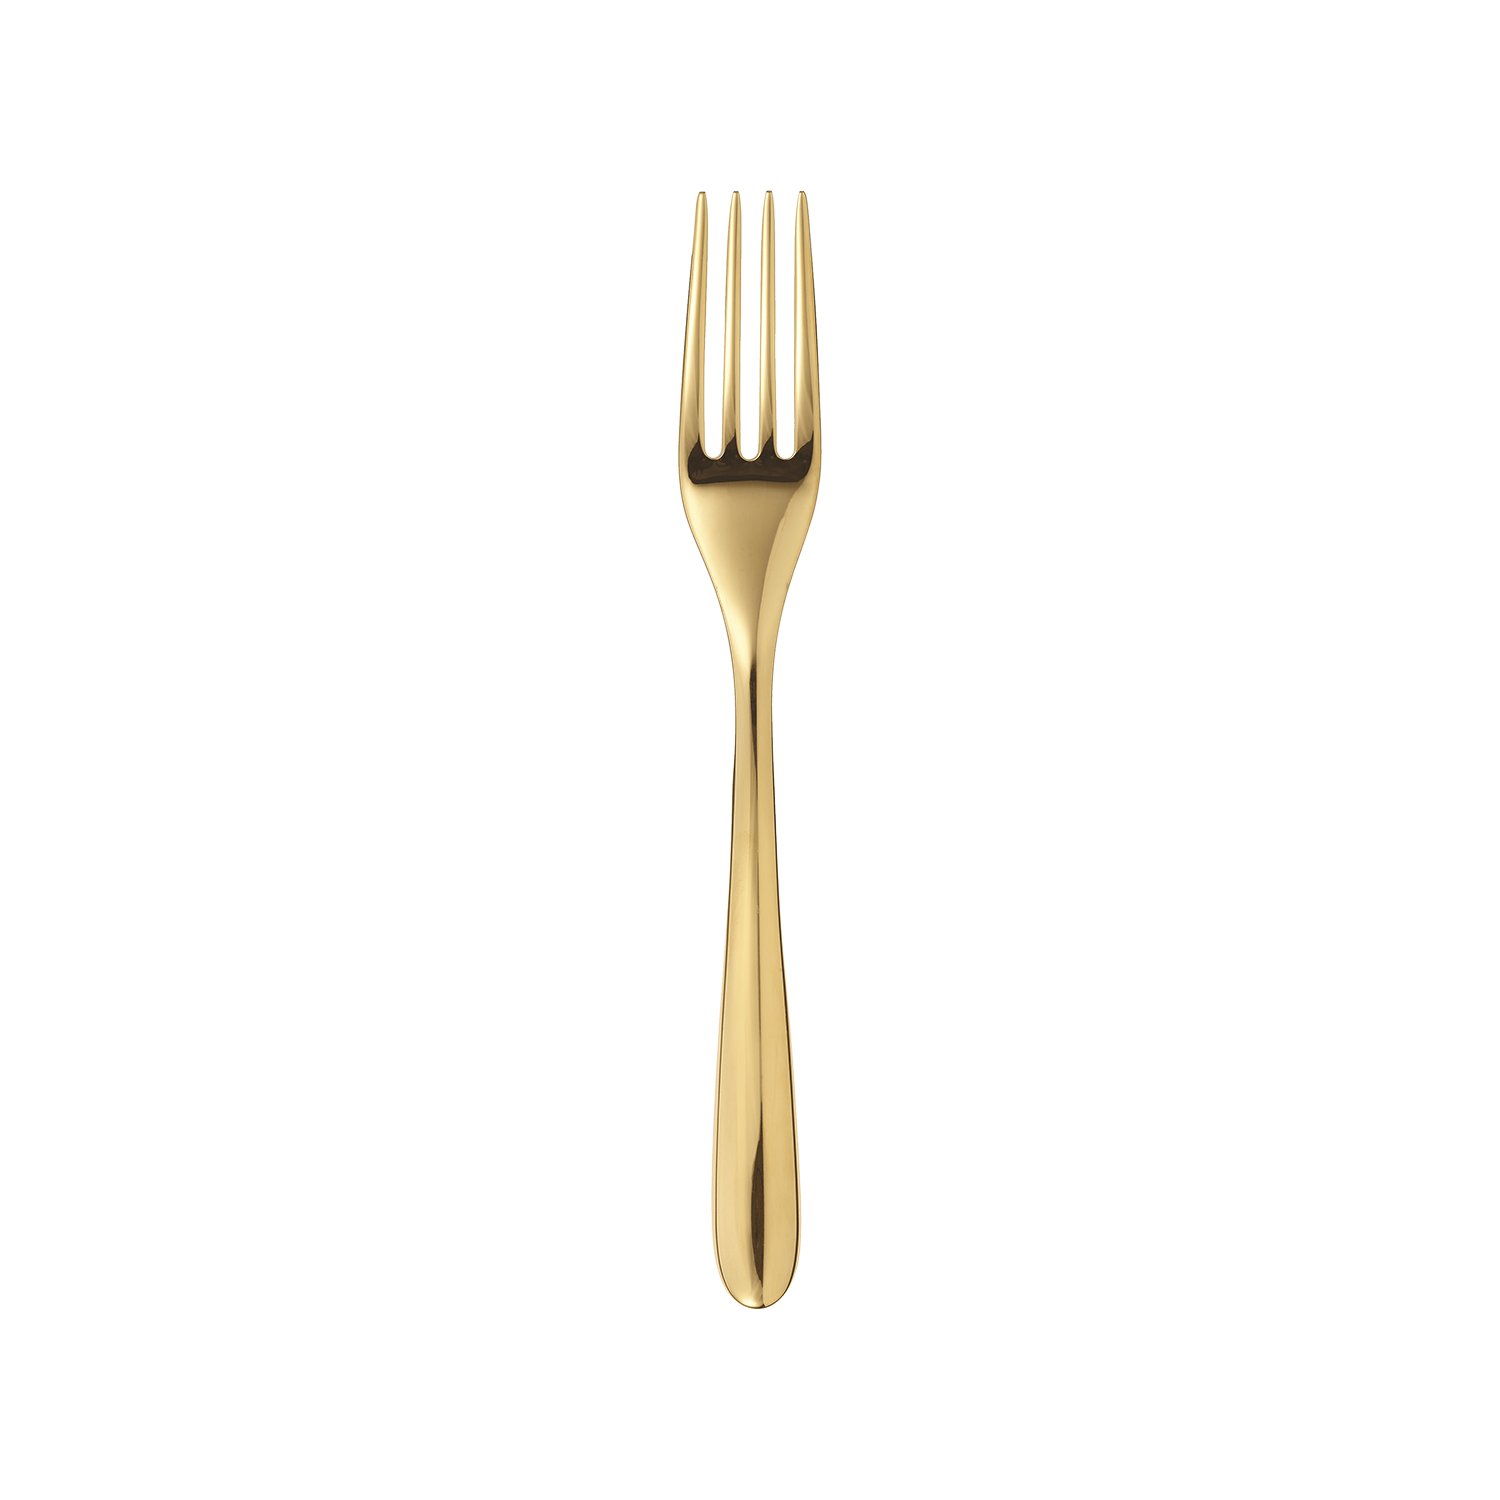 Gold stainless steel dessert fork